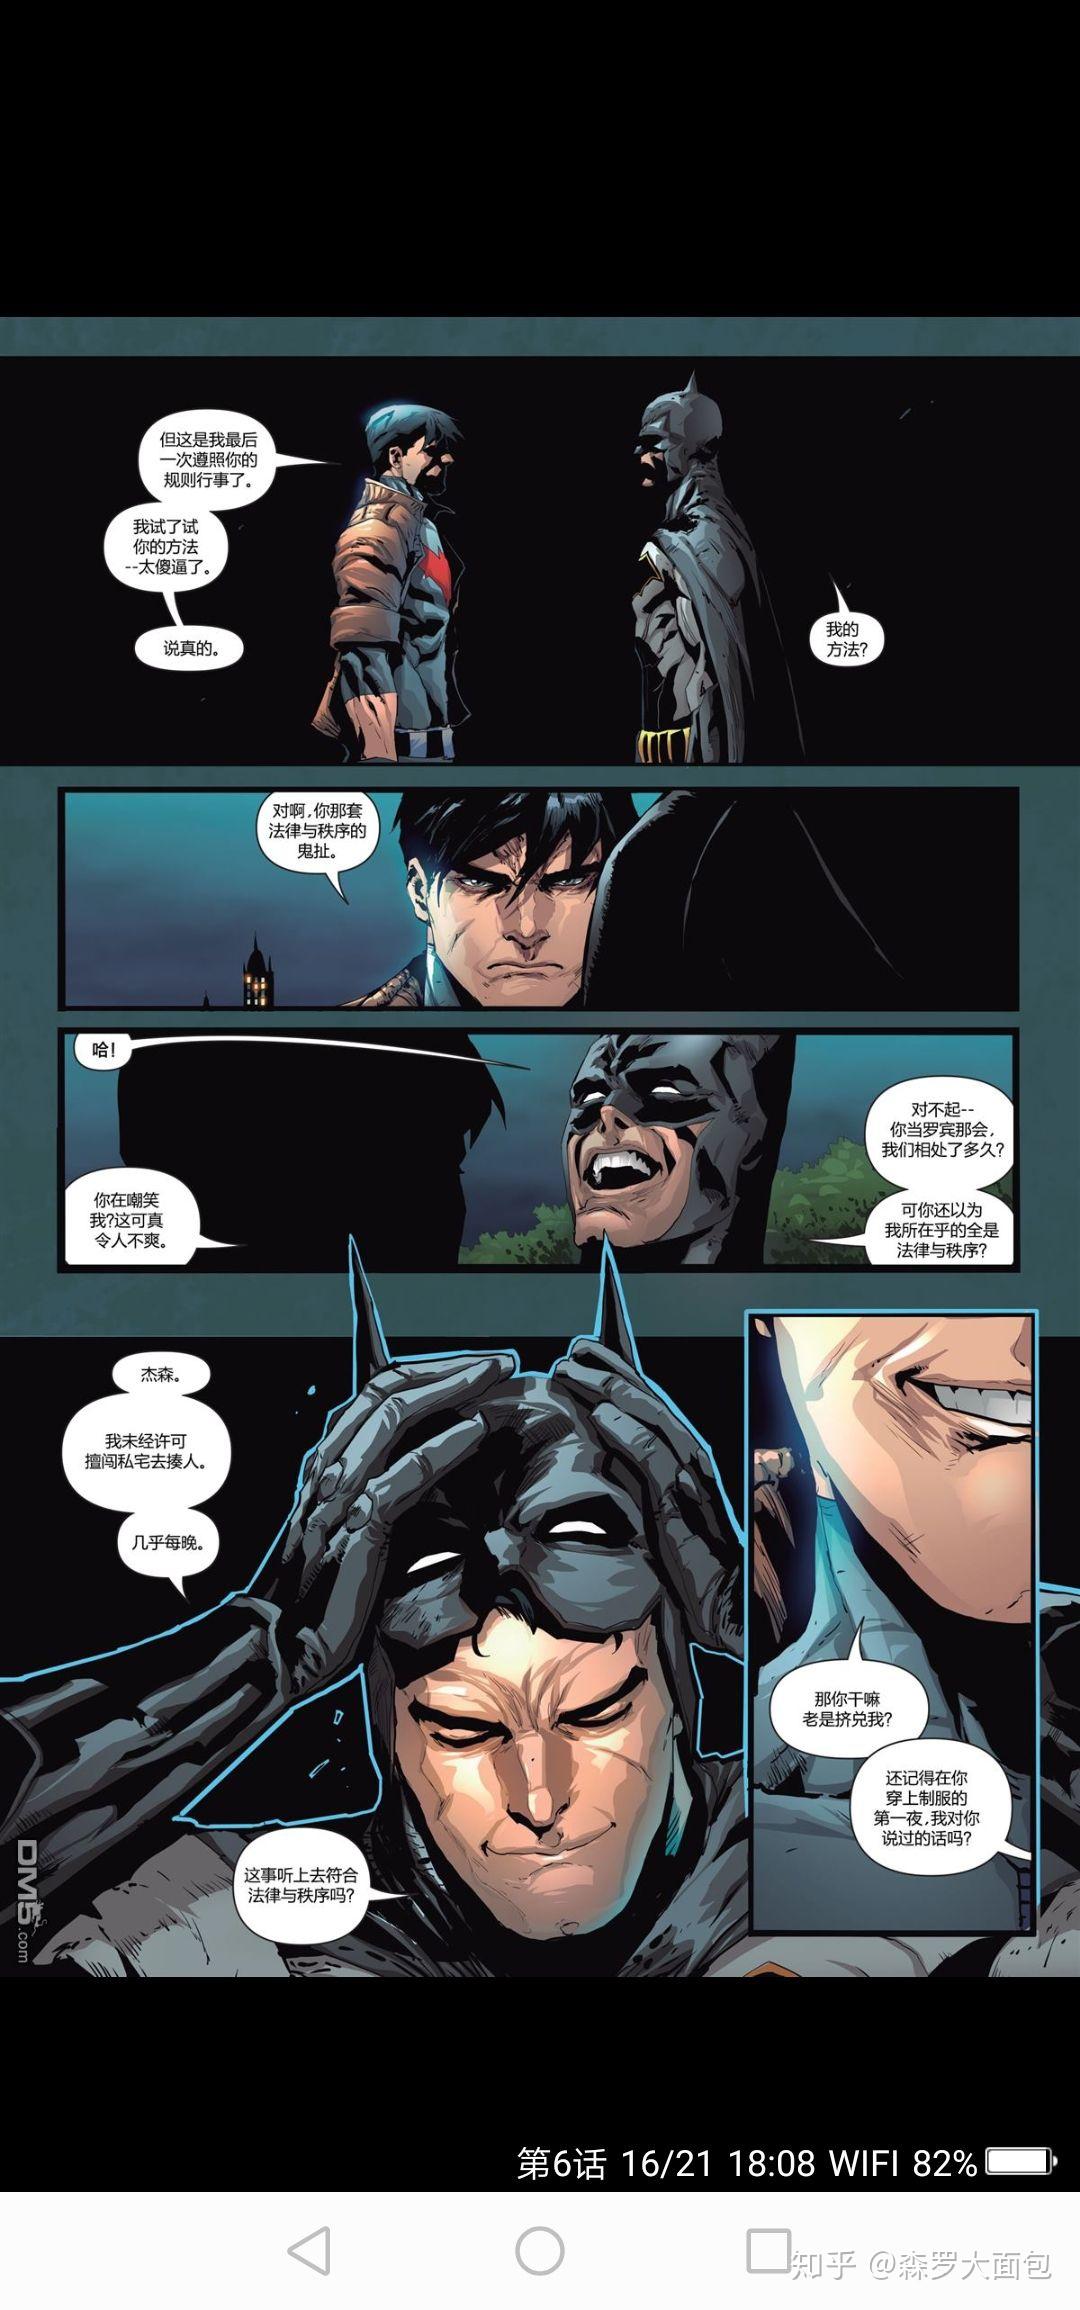 蝙蝠侠是不是有点矛盾呢